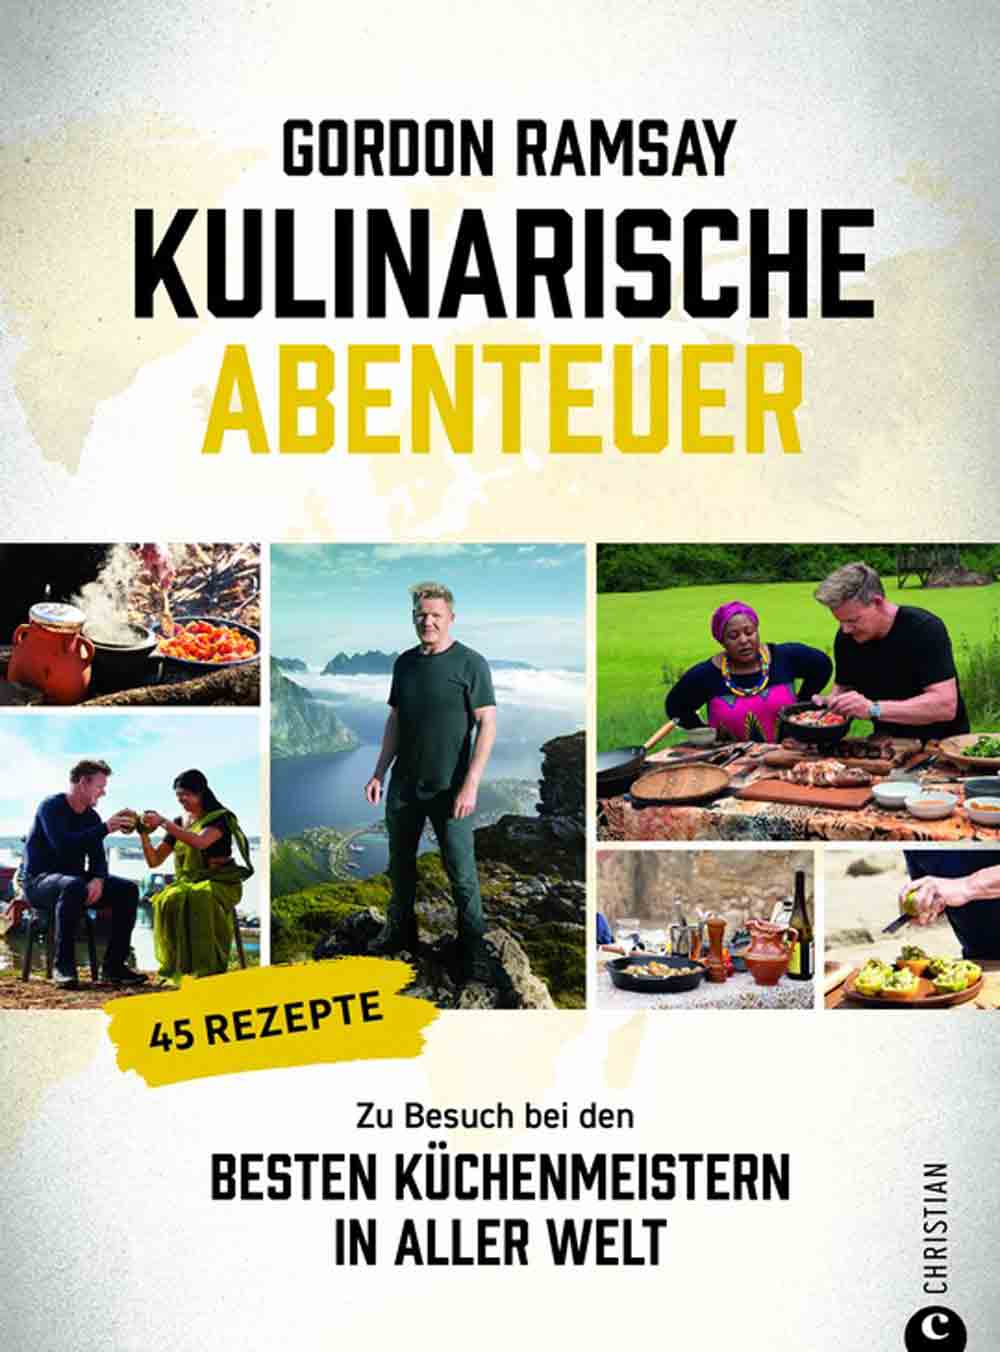 Starkoch Gordon Ramsay besucht die besten Küchenmeister der Welt: »Kulinarische Abenteuer« jetzt beim Christian Verlag